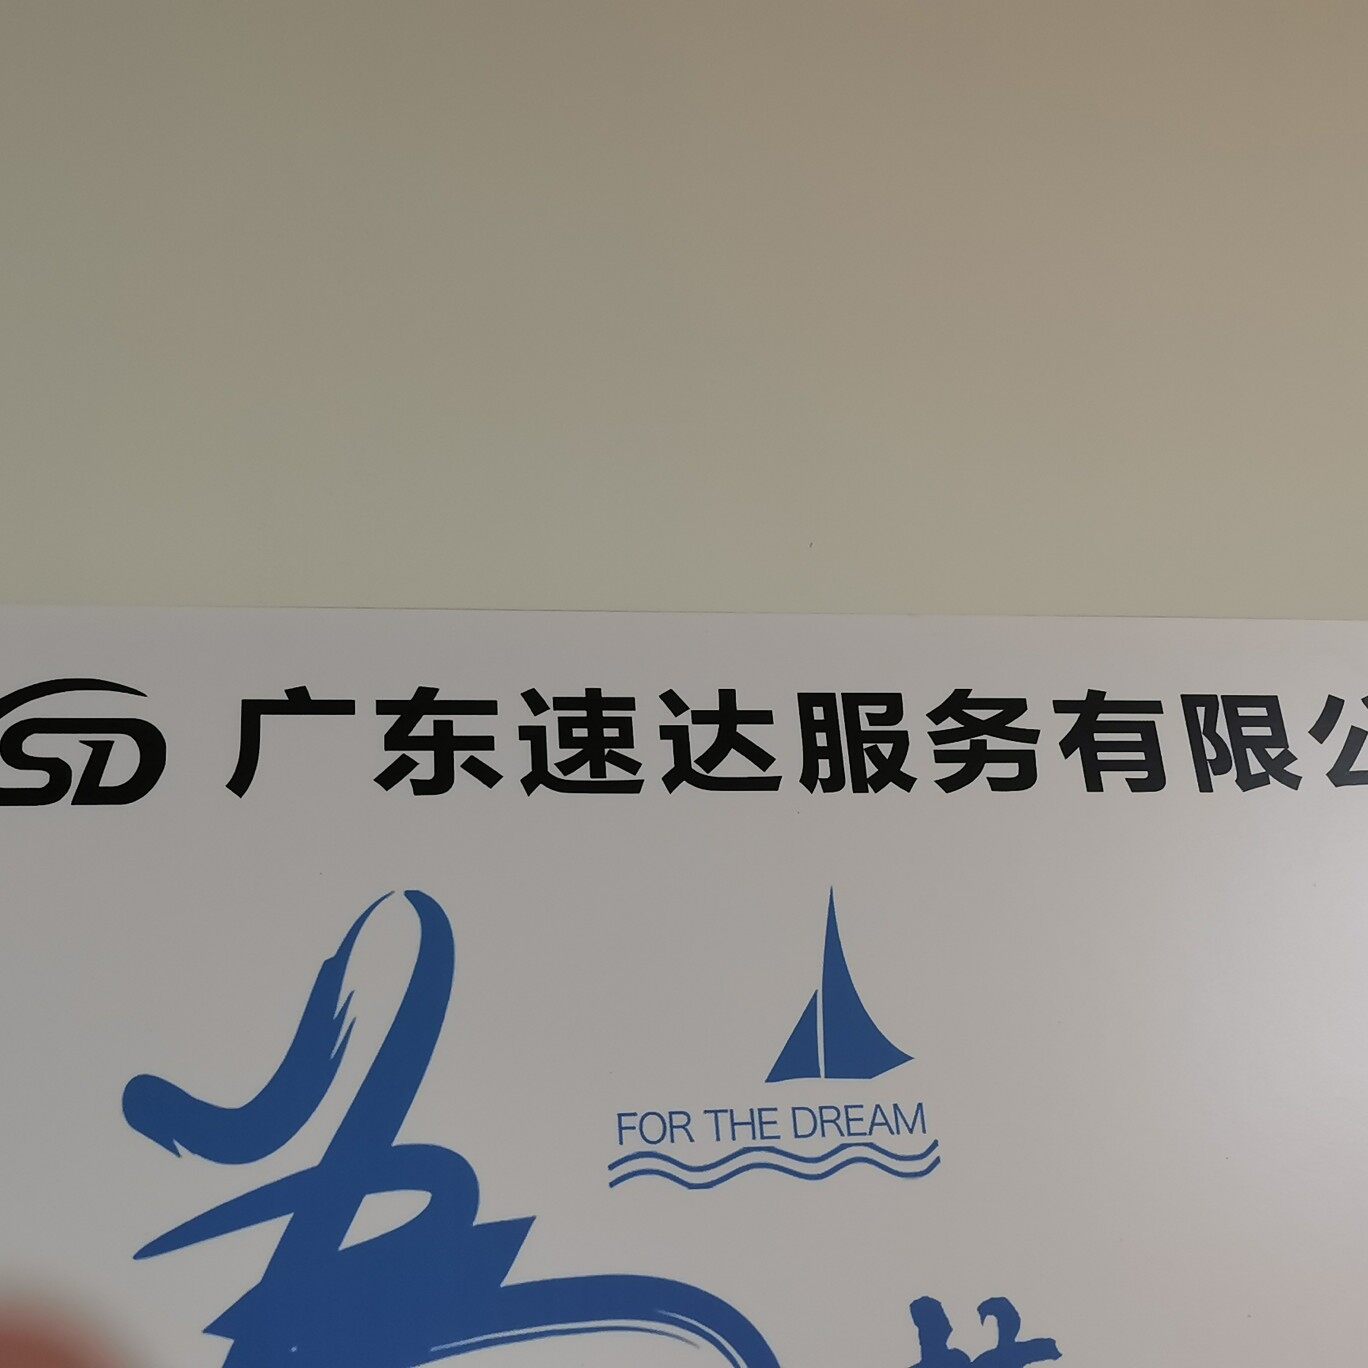 广东速达服务招聘logo